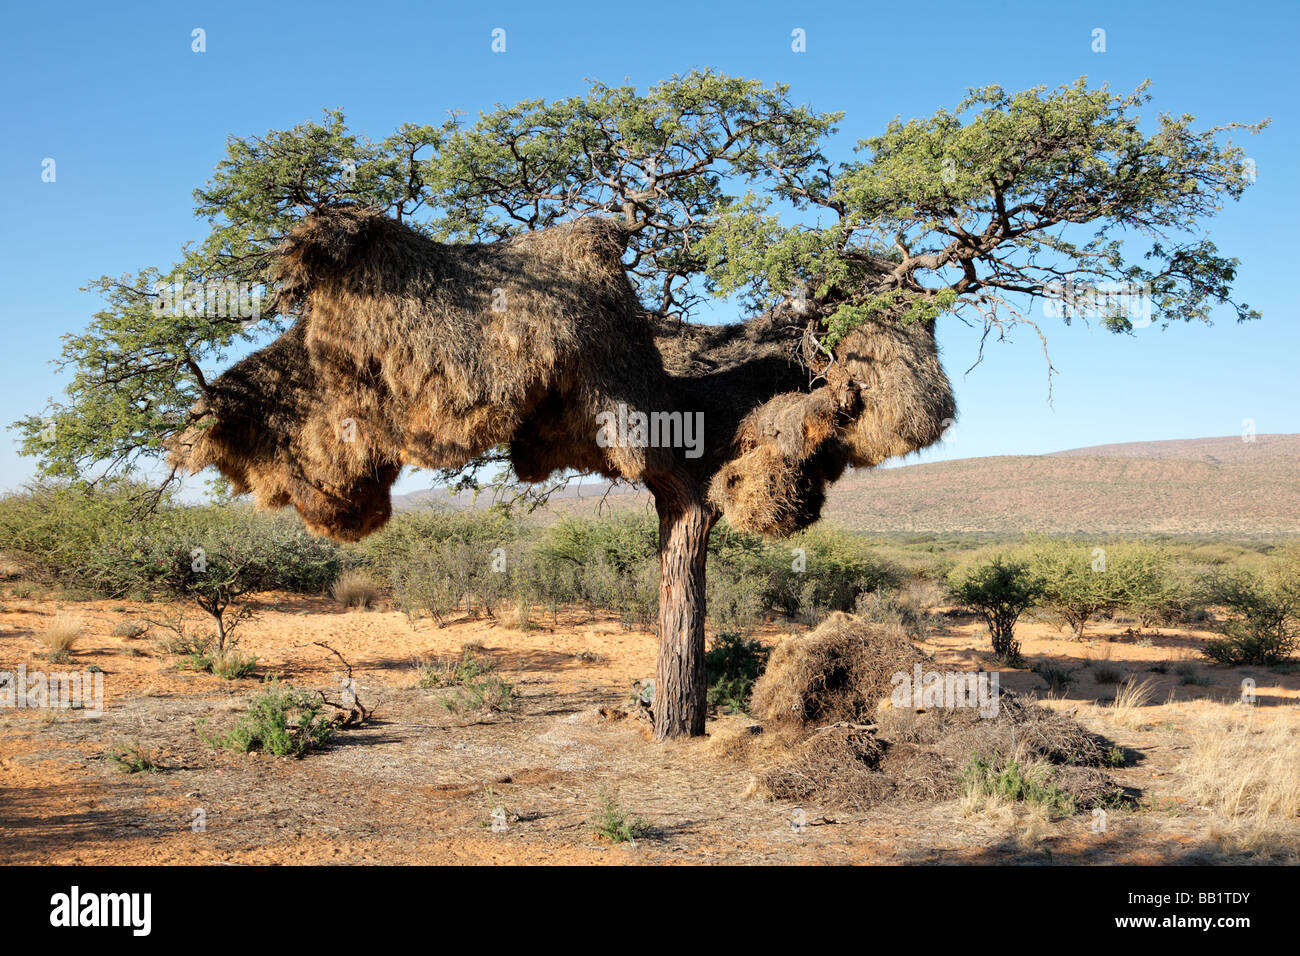 Nid communal de tisserands sociable (Philetairus socius) dans un arbre d'Acacia d'Afrique, Kalahari, Afrique du Sud Banque D'Images